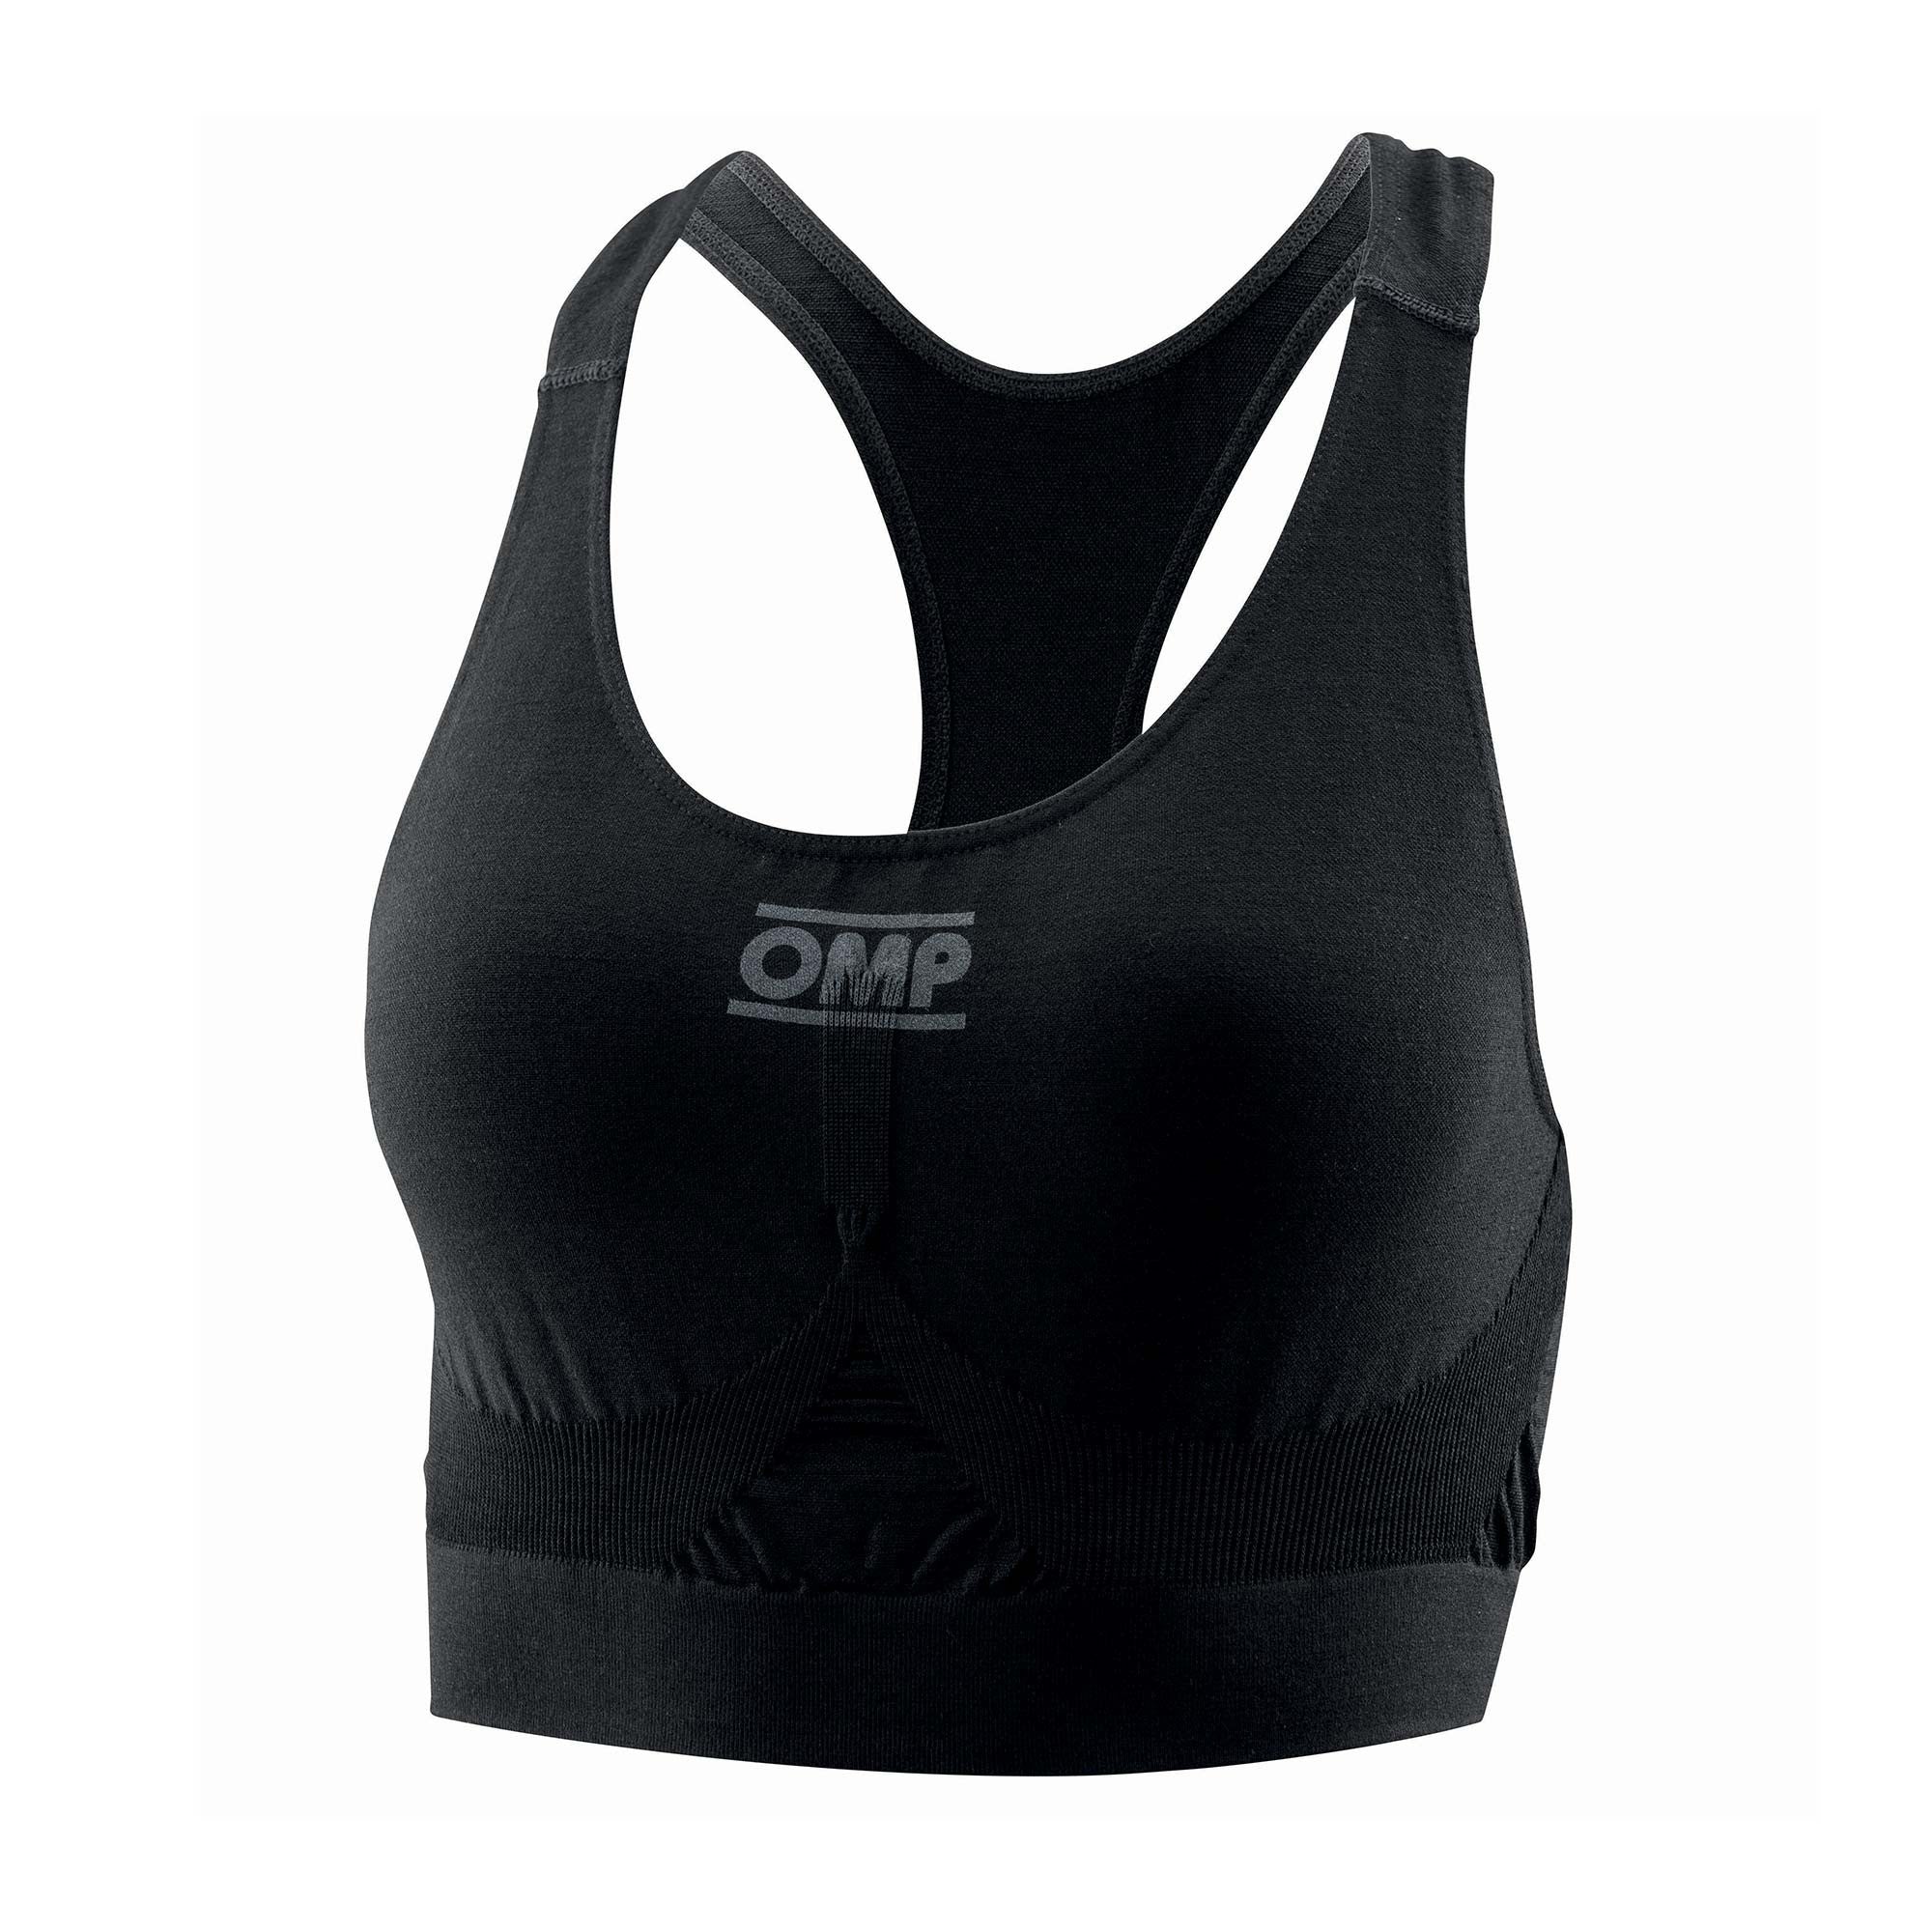 OMP IE0-0786-A01-071-S Bra underwear, FIA 8856-2018, black, size S Photo-0 